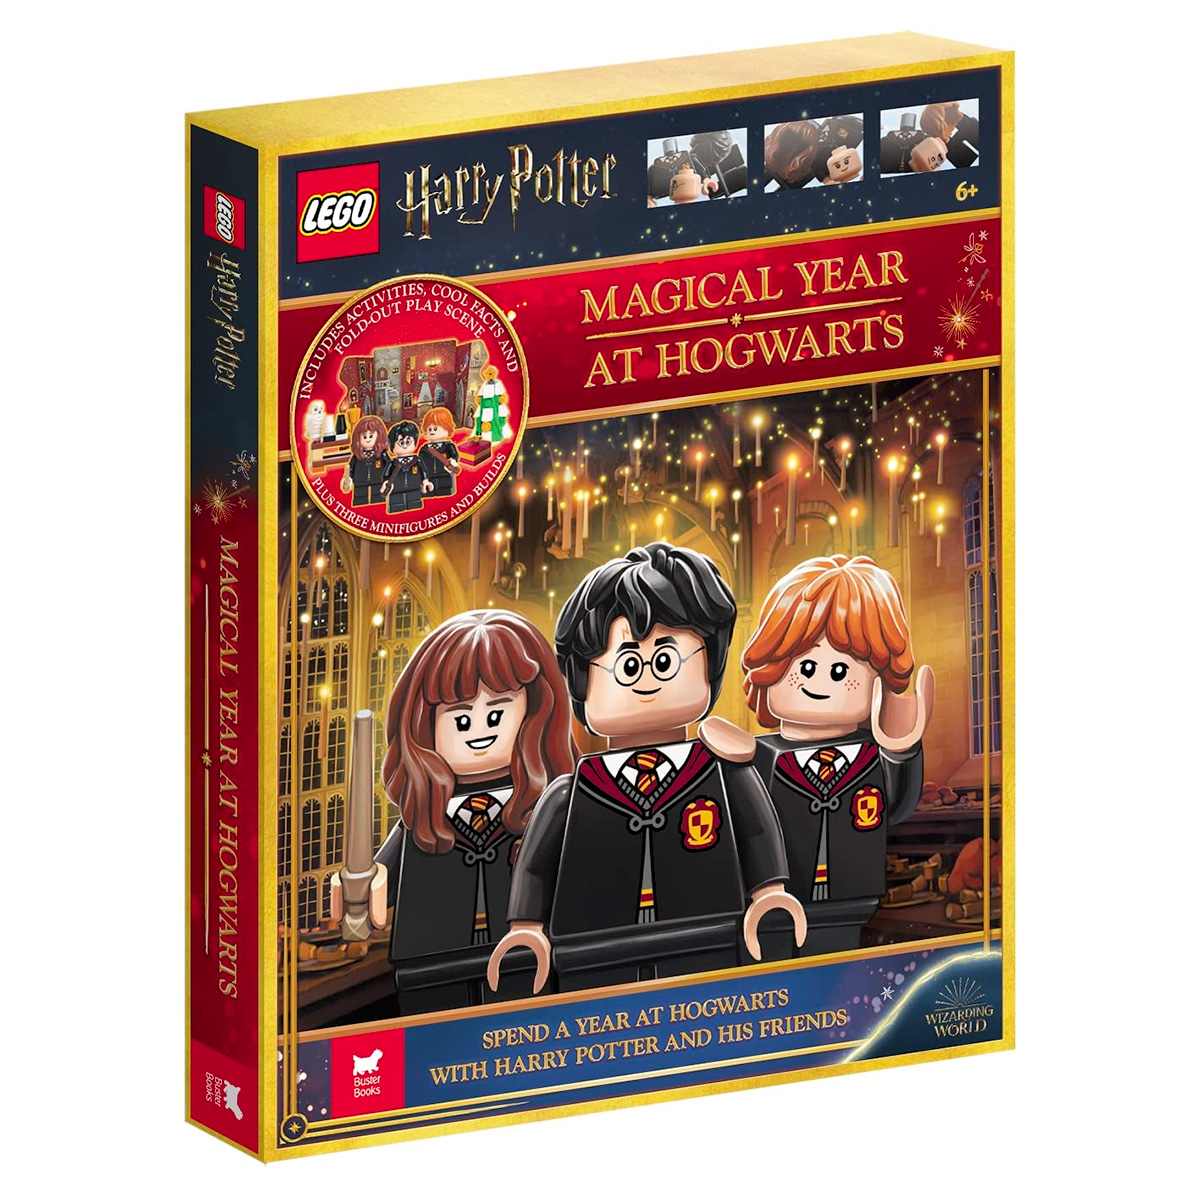 Sắp diễn ra vào tháng 2023 năm XNUMX: Năm phép thuật LEGO Harry Potter tại Hogwarts